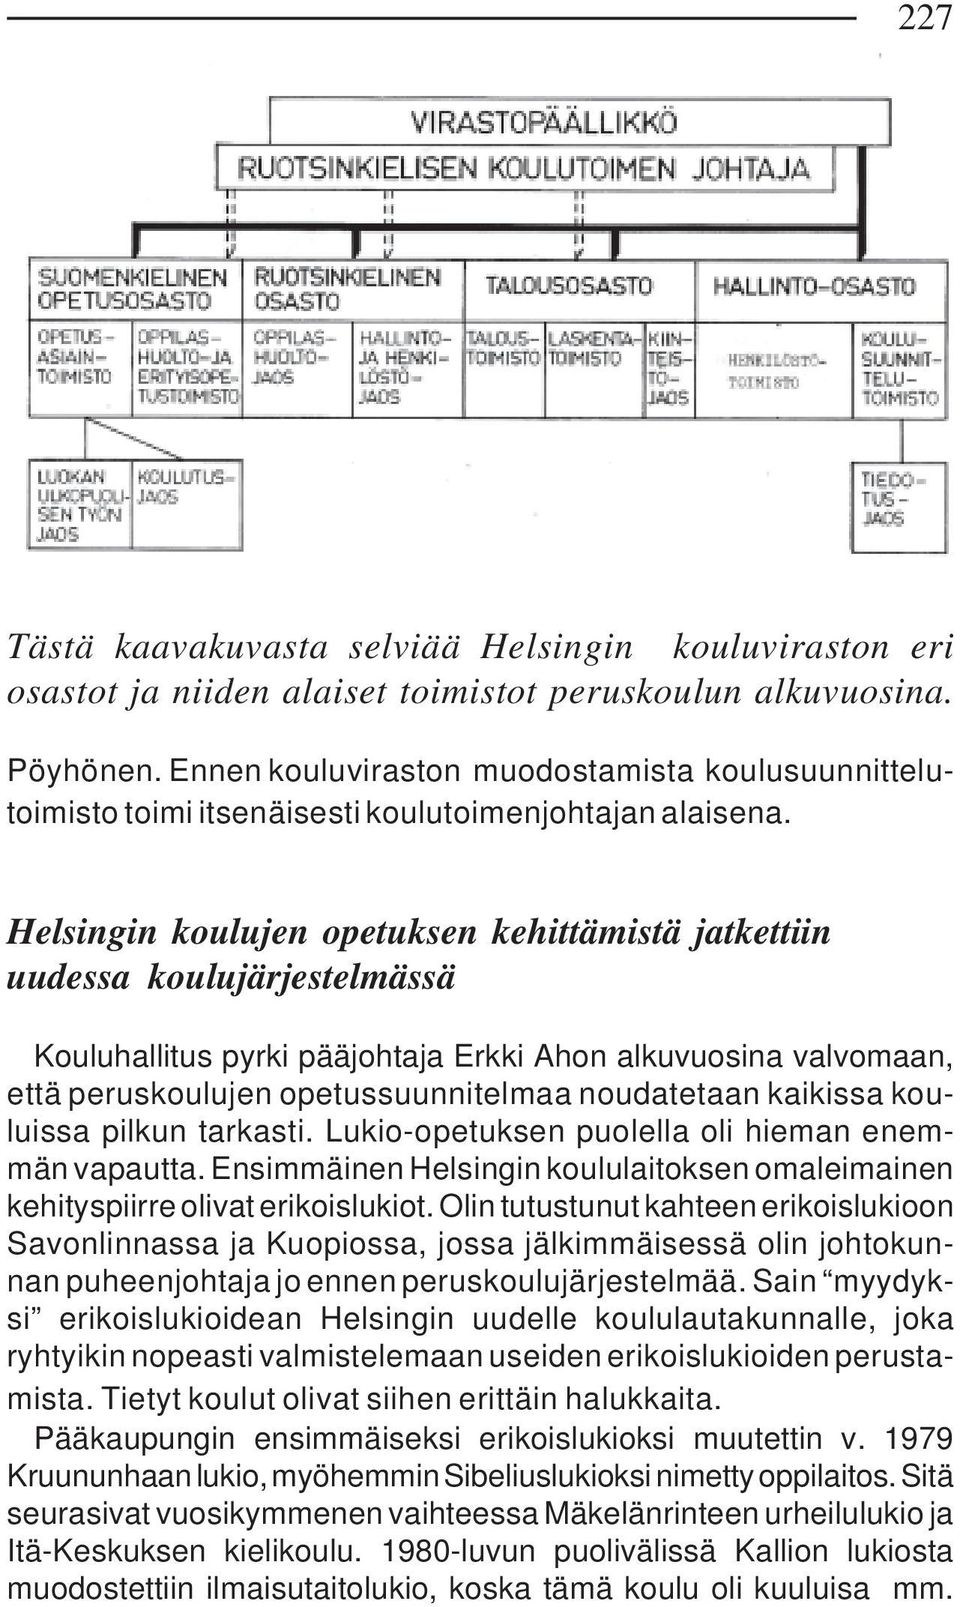 Helsingin koulujen opetuksen kehittämistä jatkettiin uudessa koulujärjestelmässä Kouluhallitus pyrki pääjohtaja Erkki Ahon alkuvuosina valvomaan, että peruskoulujen opetussuunnitelmaa noudatetaan